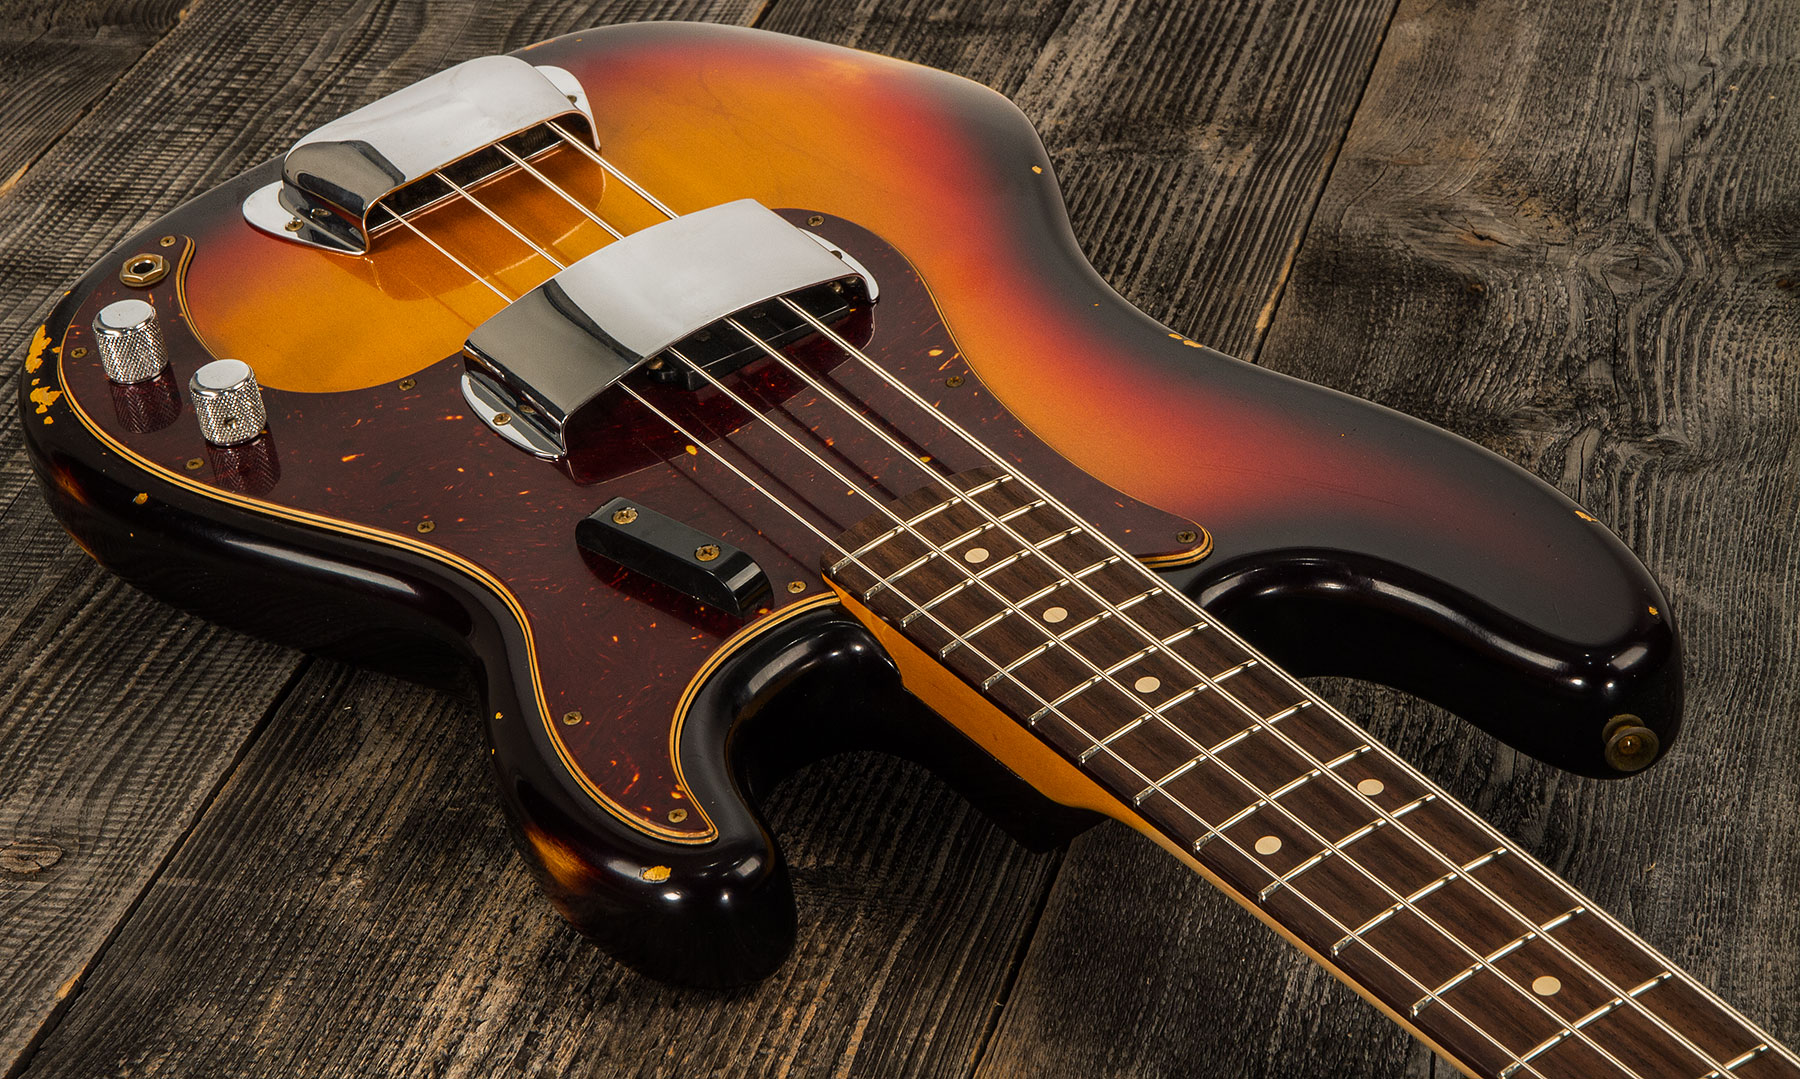 Fender Custom Shop Precision Bass 1961 Rw #cz556533 - Relic 3-color Sunburst - Solidbody E-bass - Variation 1